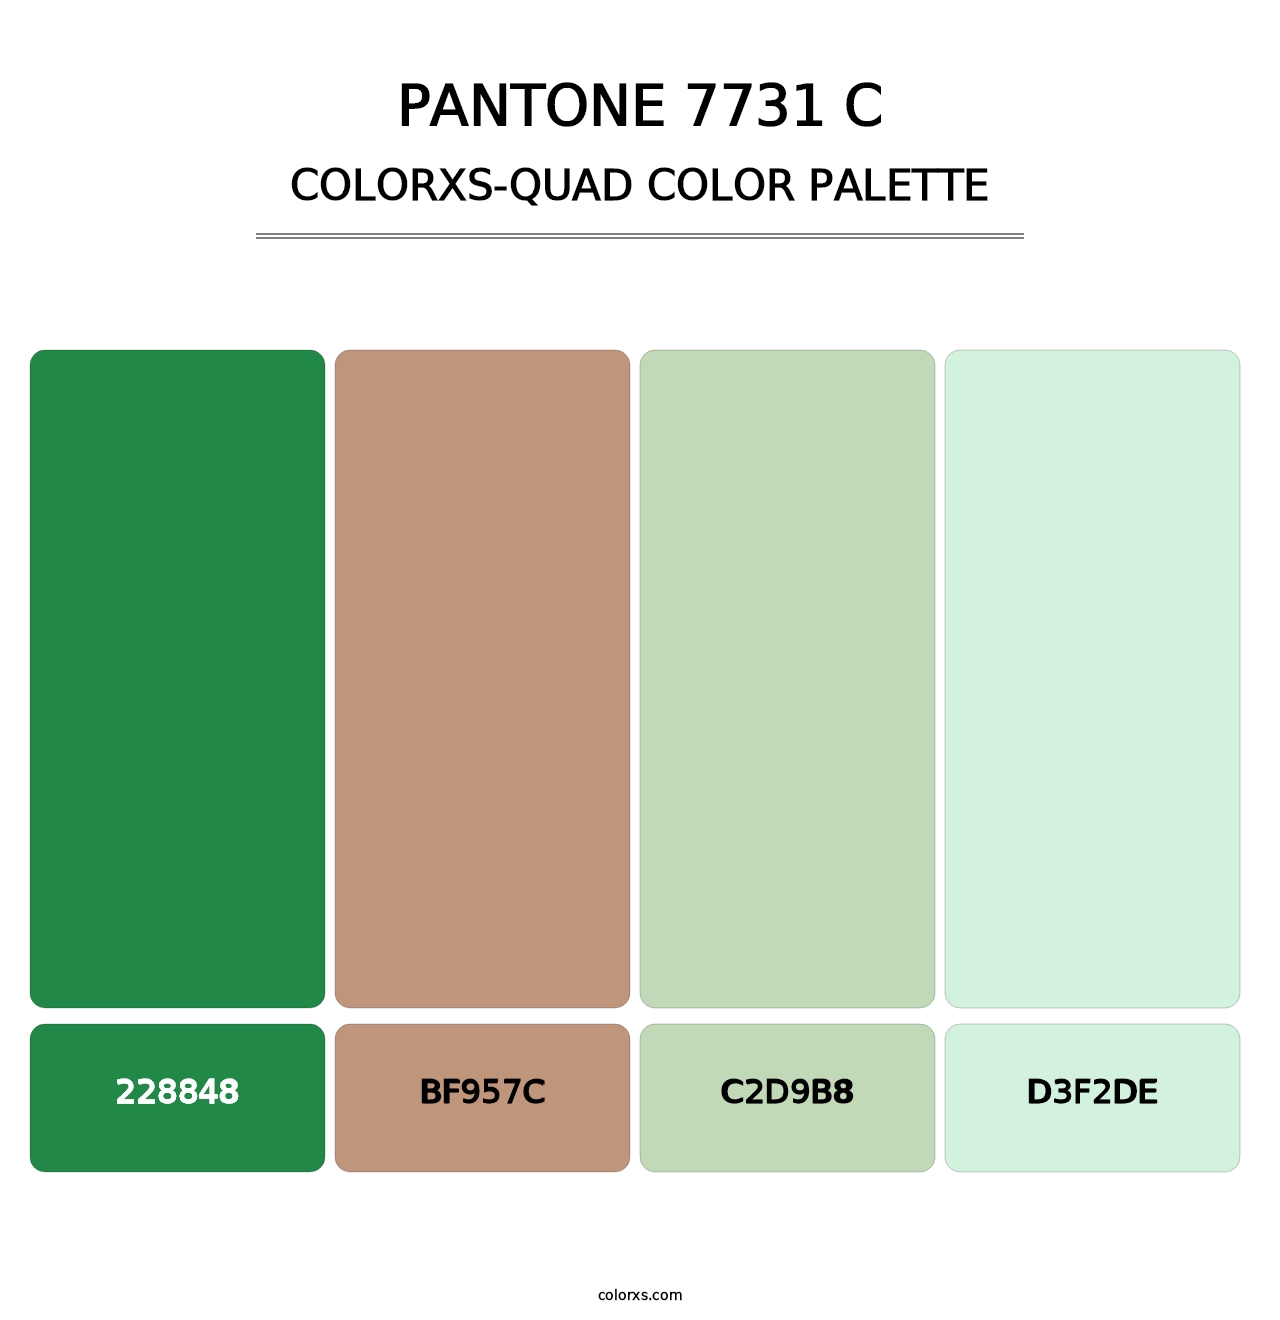 PANTONE 7731 C - Colorxs Quad Palette